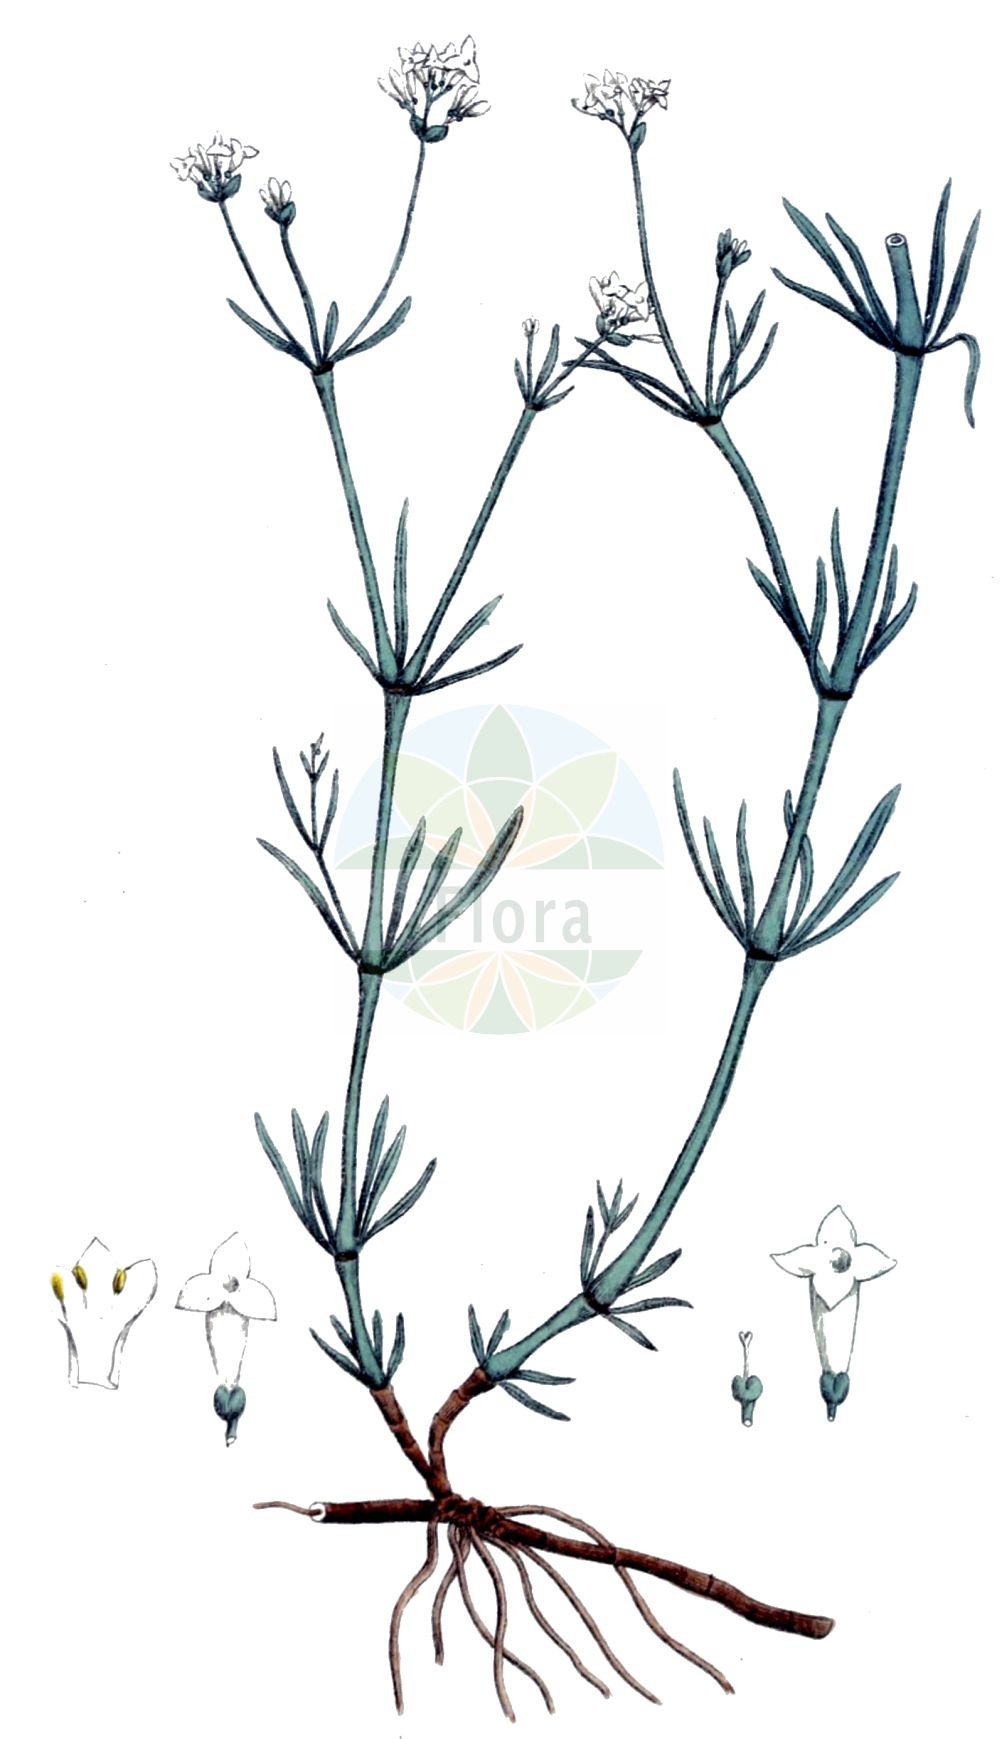 Historische Abbildung von Asperula tinctoria (Färber-Meier - Dyer's Woodruff). Das Bild zeigt Blatt, Bluete, Frucht und Same. ---- Historical Drawing of Asperula tinctoria (Färber-Meier - Dyer's Woodruff). The image is showing leaf, flower, fruit and seed.(Asperula tinctoria,Färber-Meier,Dyer's Woodruff,Asperula tinctoria,Galium tinctorium,Galium triandrum,Faerber-Meier,Dyer's Woodruff,Asperula,Meier,Woodruff,Rubiaceae,Rötegewächse,Bedstraw family,Blatt,Bluete,Frucht,Same,leaf,flower,fruit,seed,Svensk Botanik (Svensk Botanik))